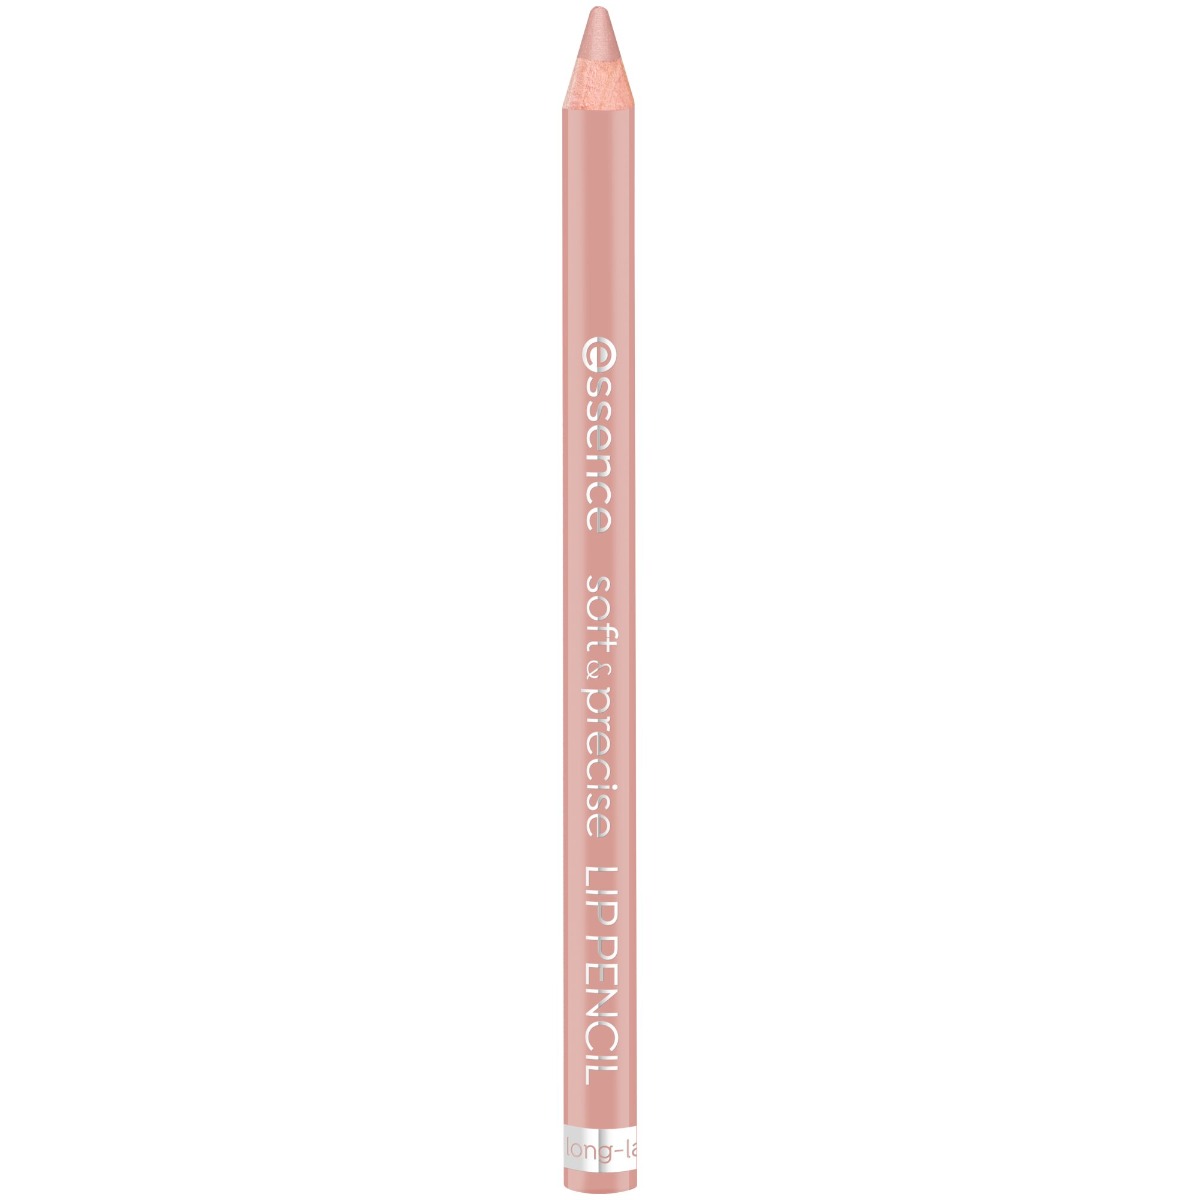 Creion pentru buze Soft & Precise Lip Pencil 301 - Romantic, 0.78g, Essence